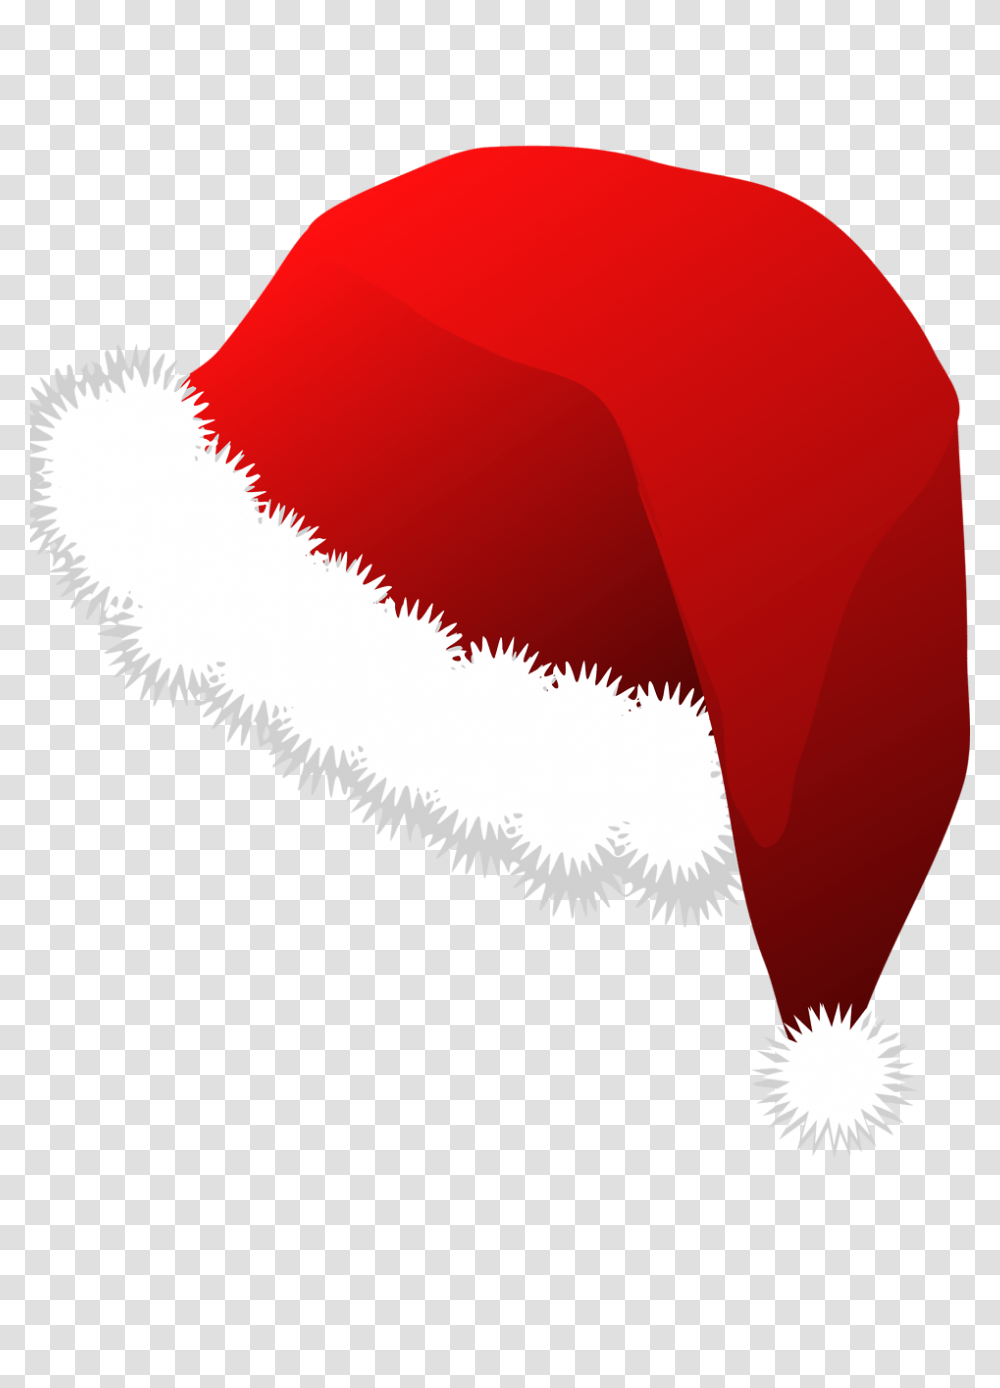 Christmas Santa Claus Red Hat Image Santa Hat Royalty Free, Cushion, Pillow, Balloon, Clothing Transparent Png